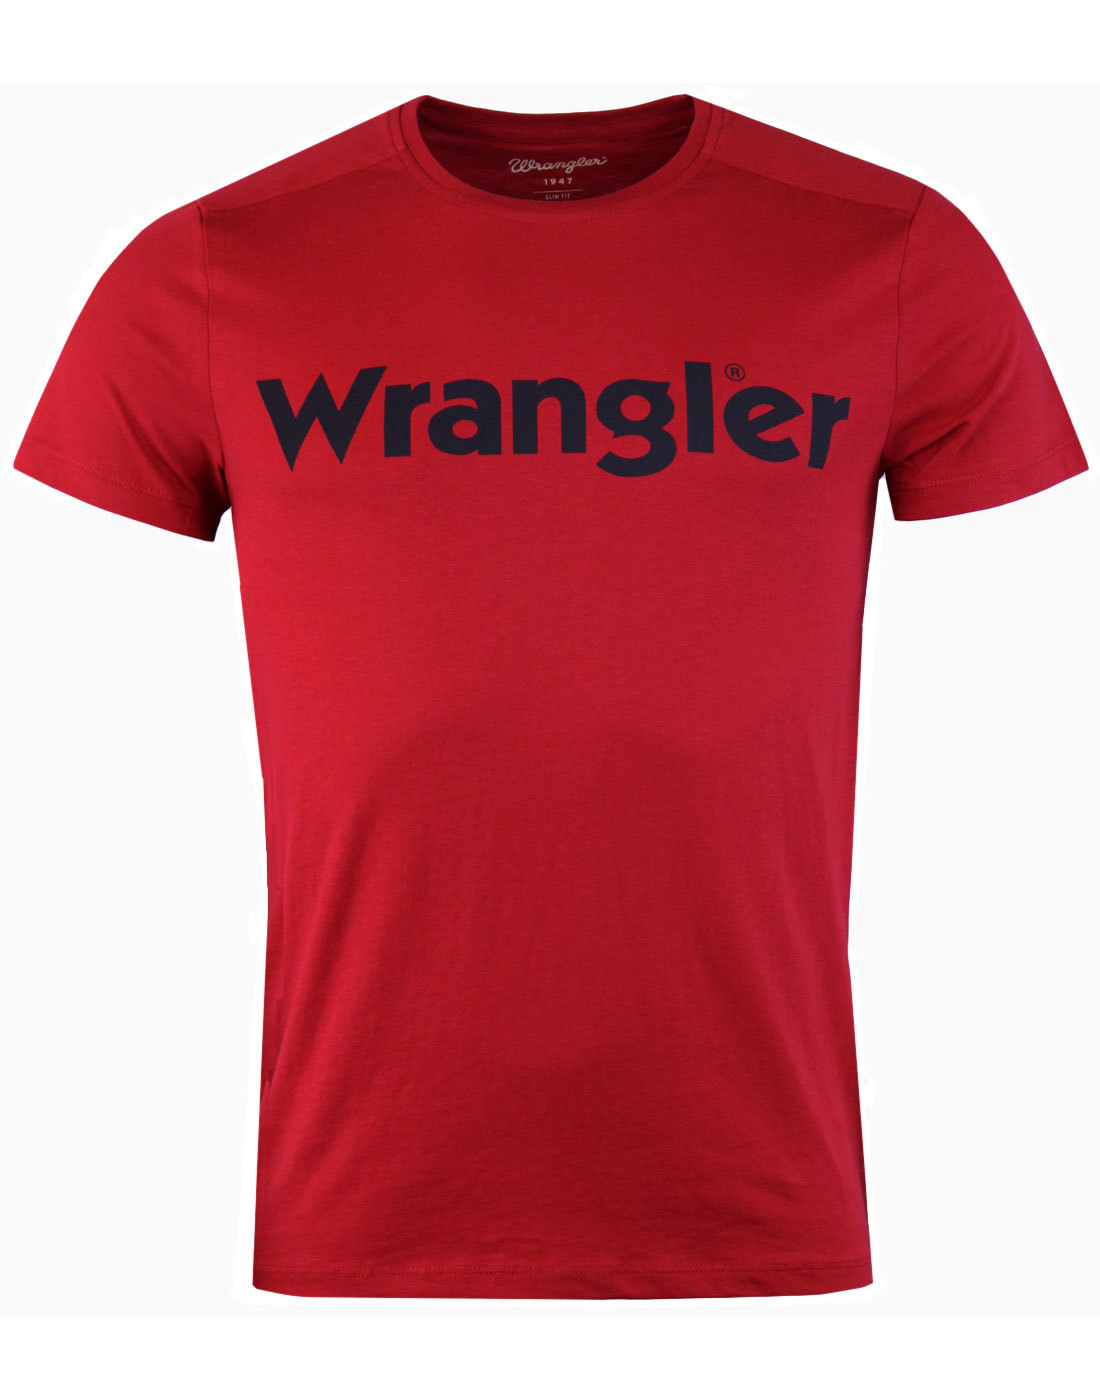 WRANGLER Retro 70s Classic Logo Crew T-Shirt RED